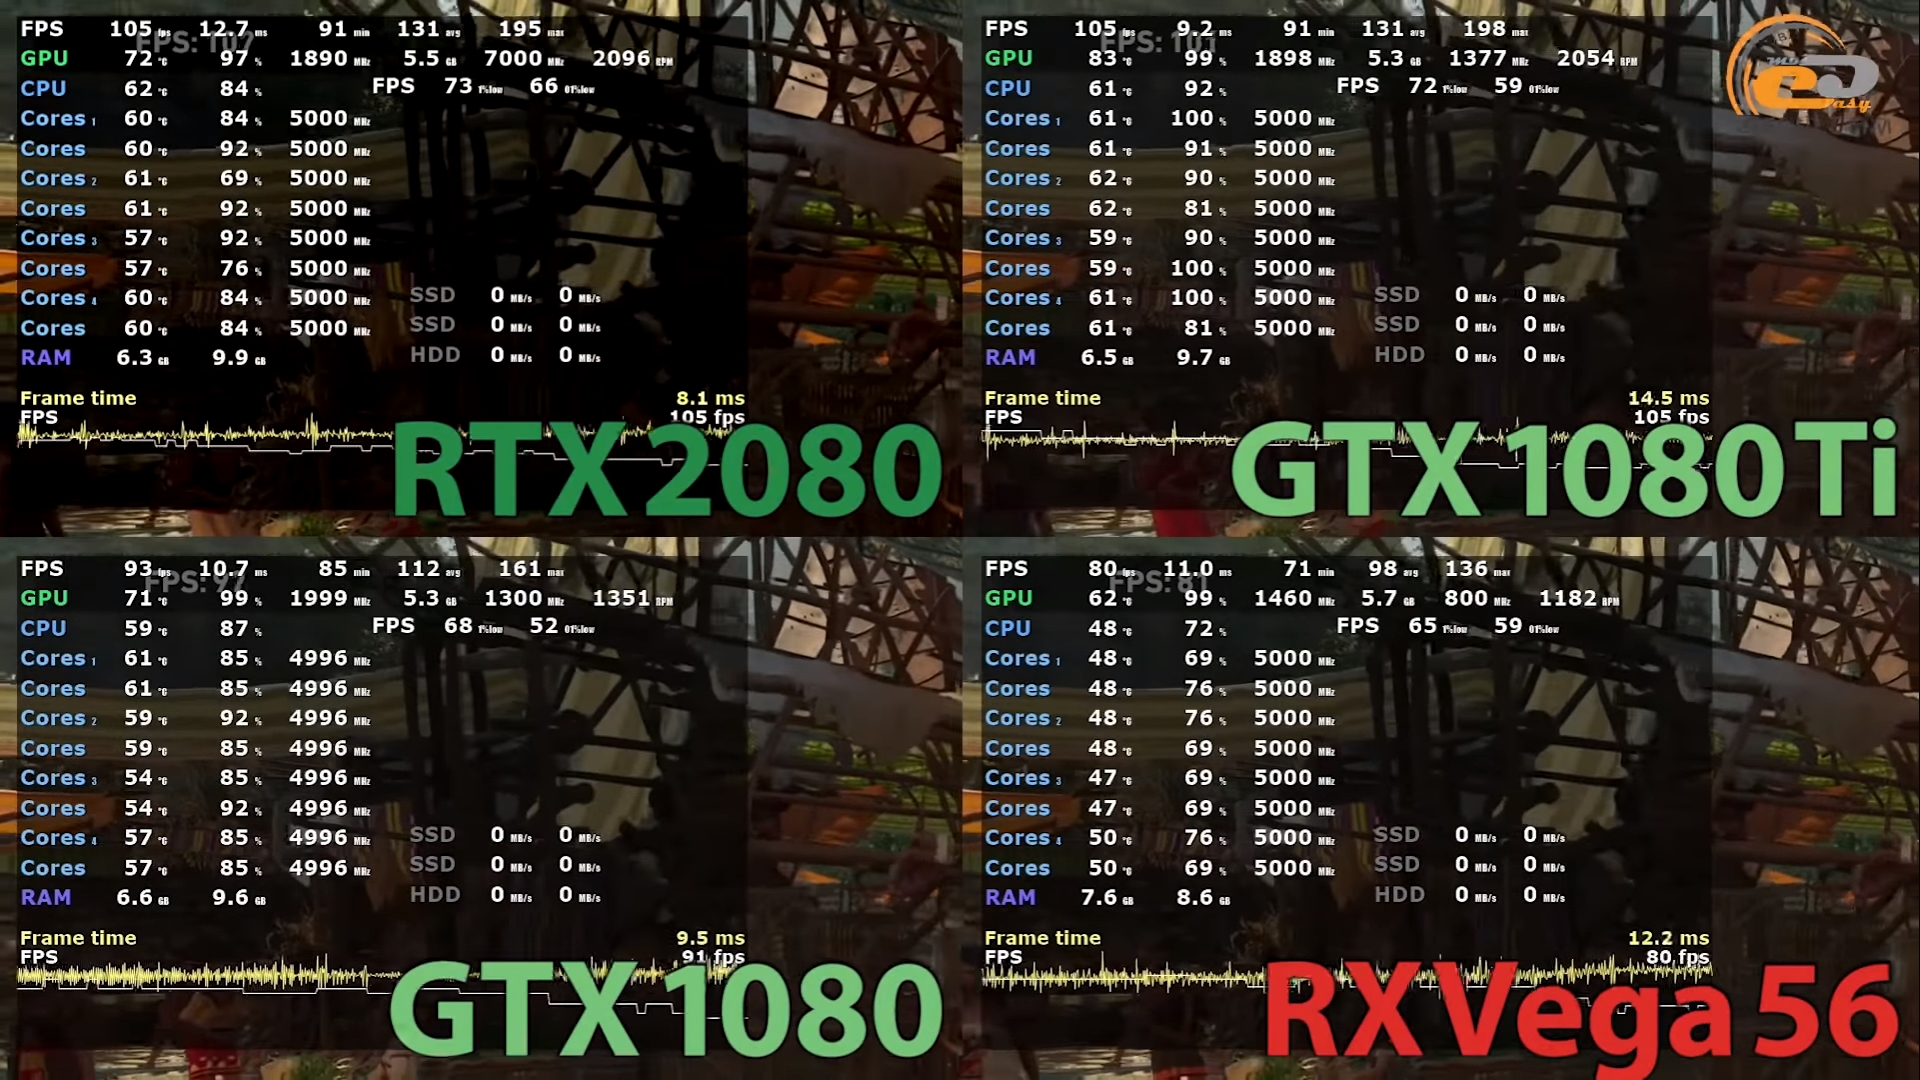 Сравнение 1080 и 1080 ti. Программа для мониторинга fps CPU GPU В играх.